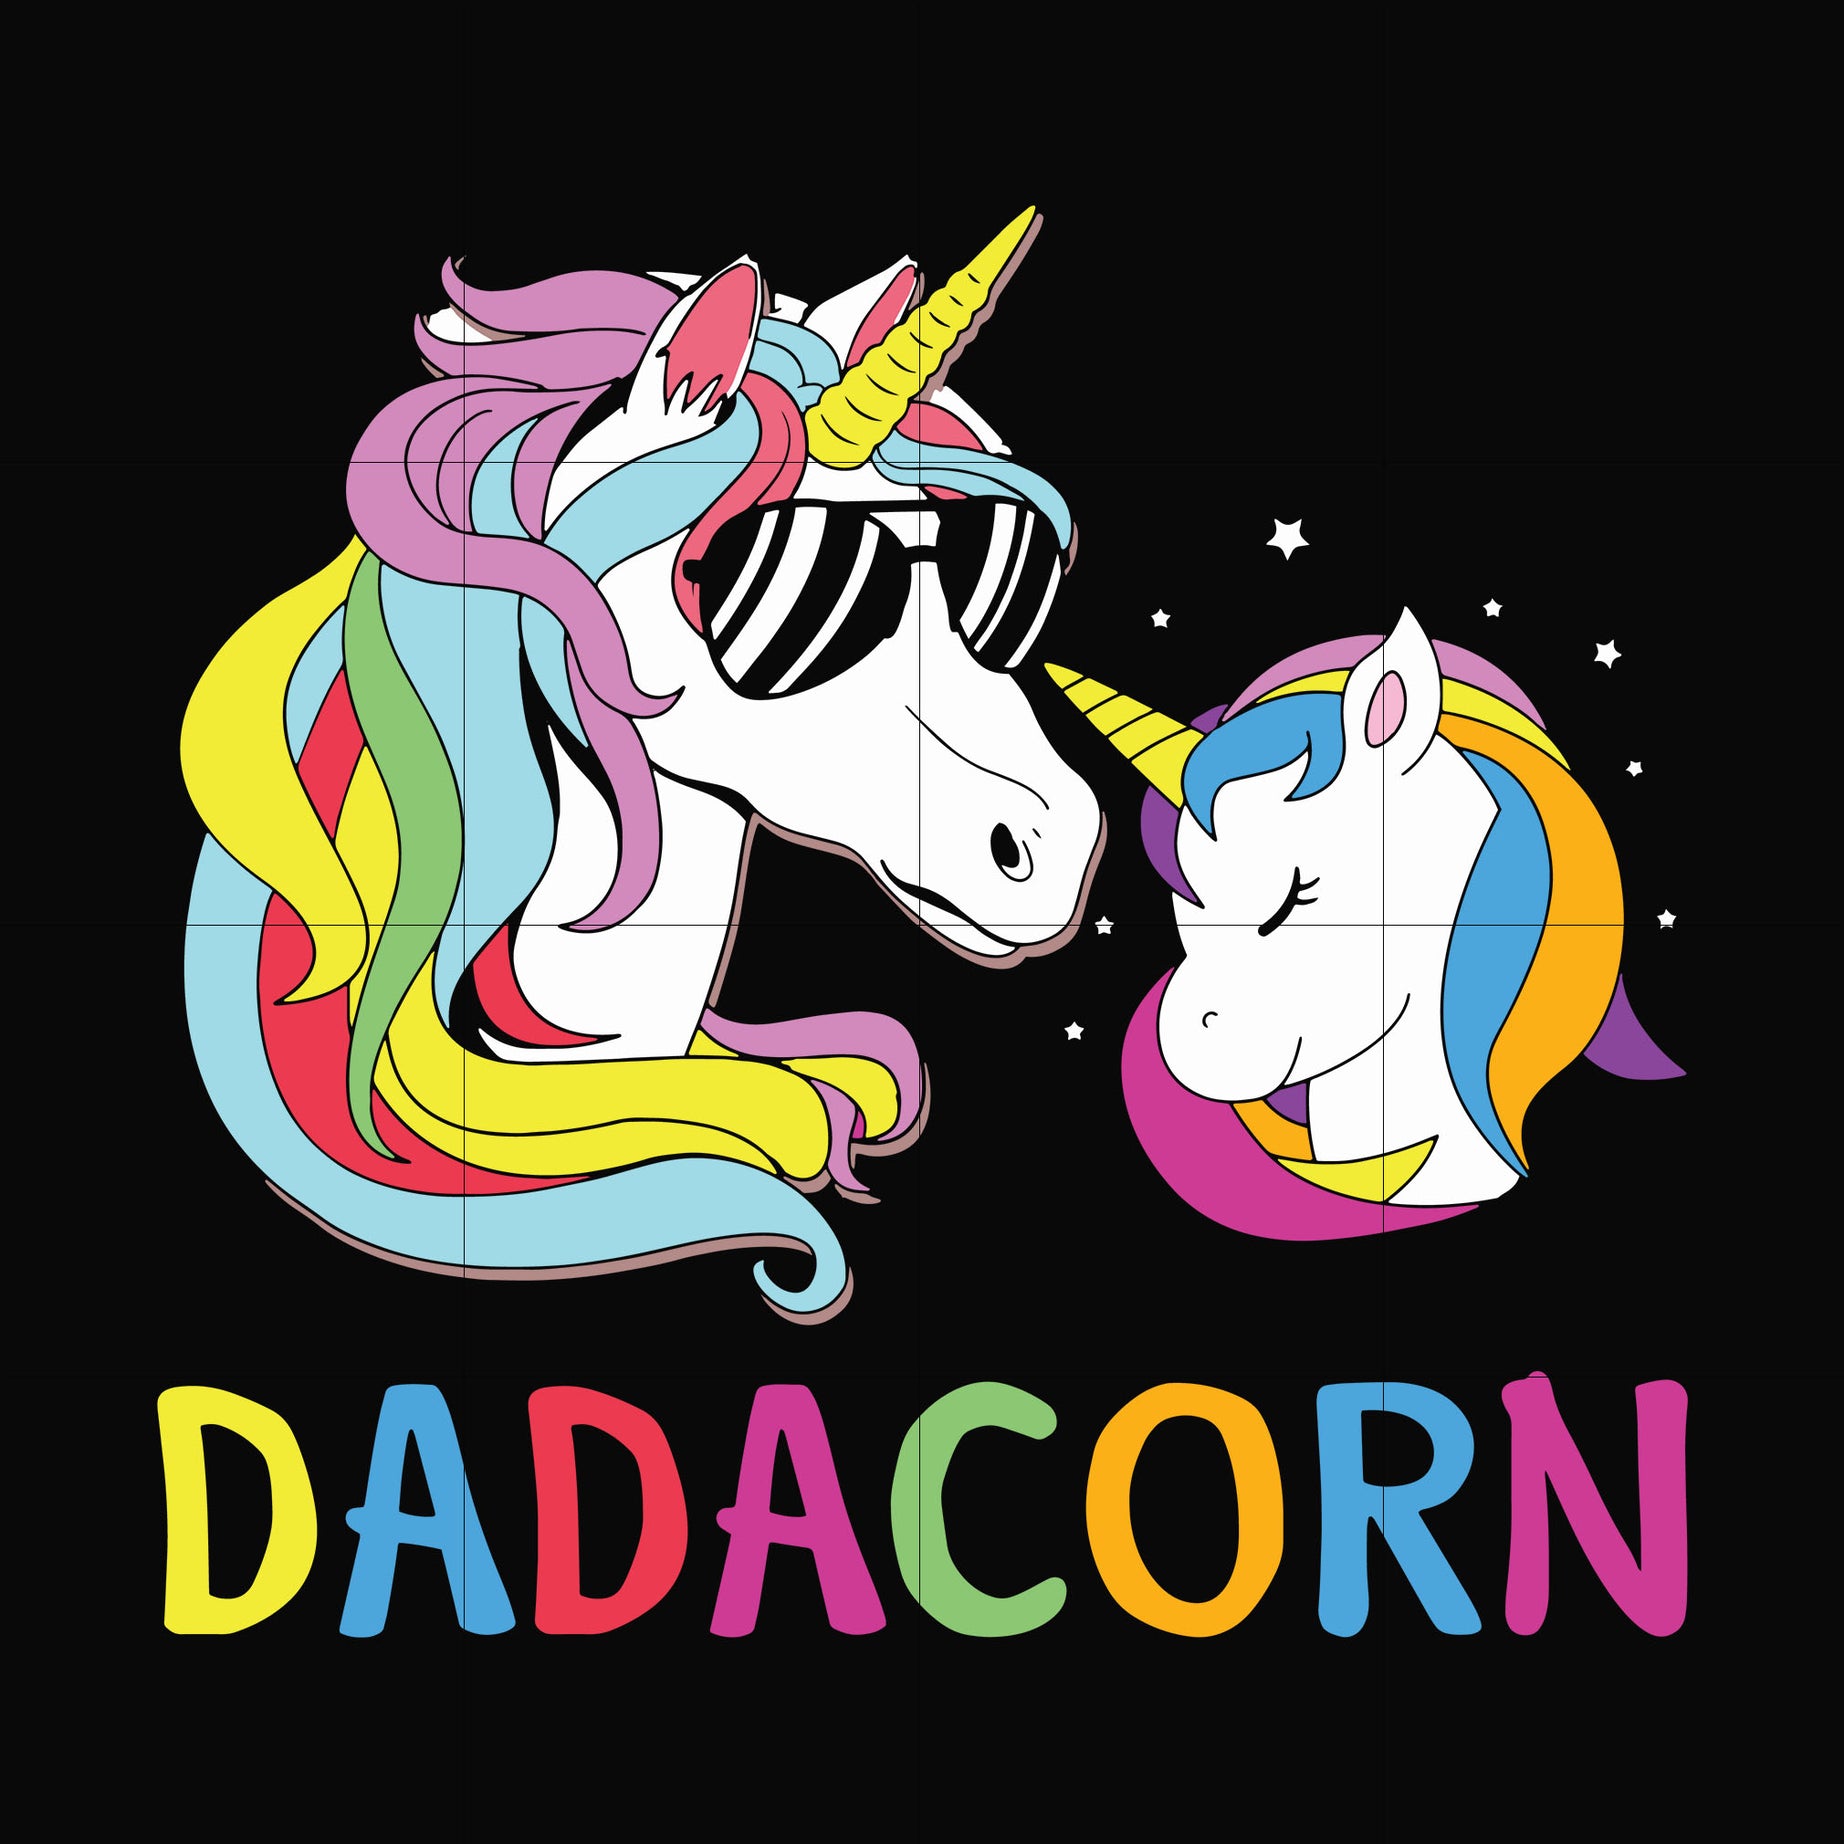 Dadacorn svg, png, dxf, eps, digital file FTD123